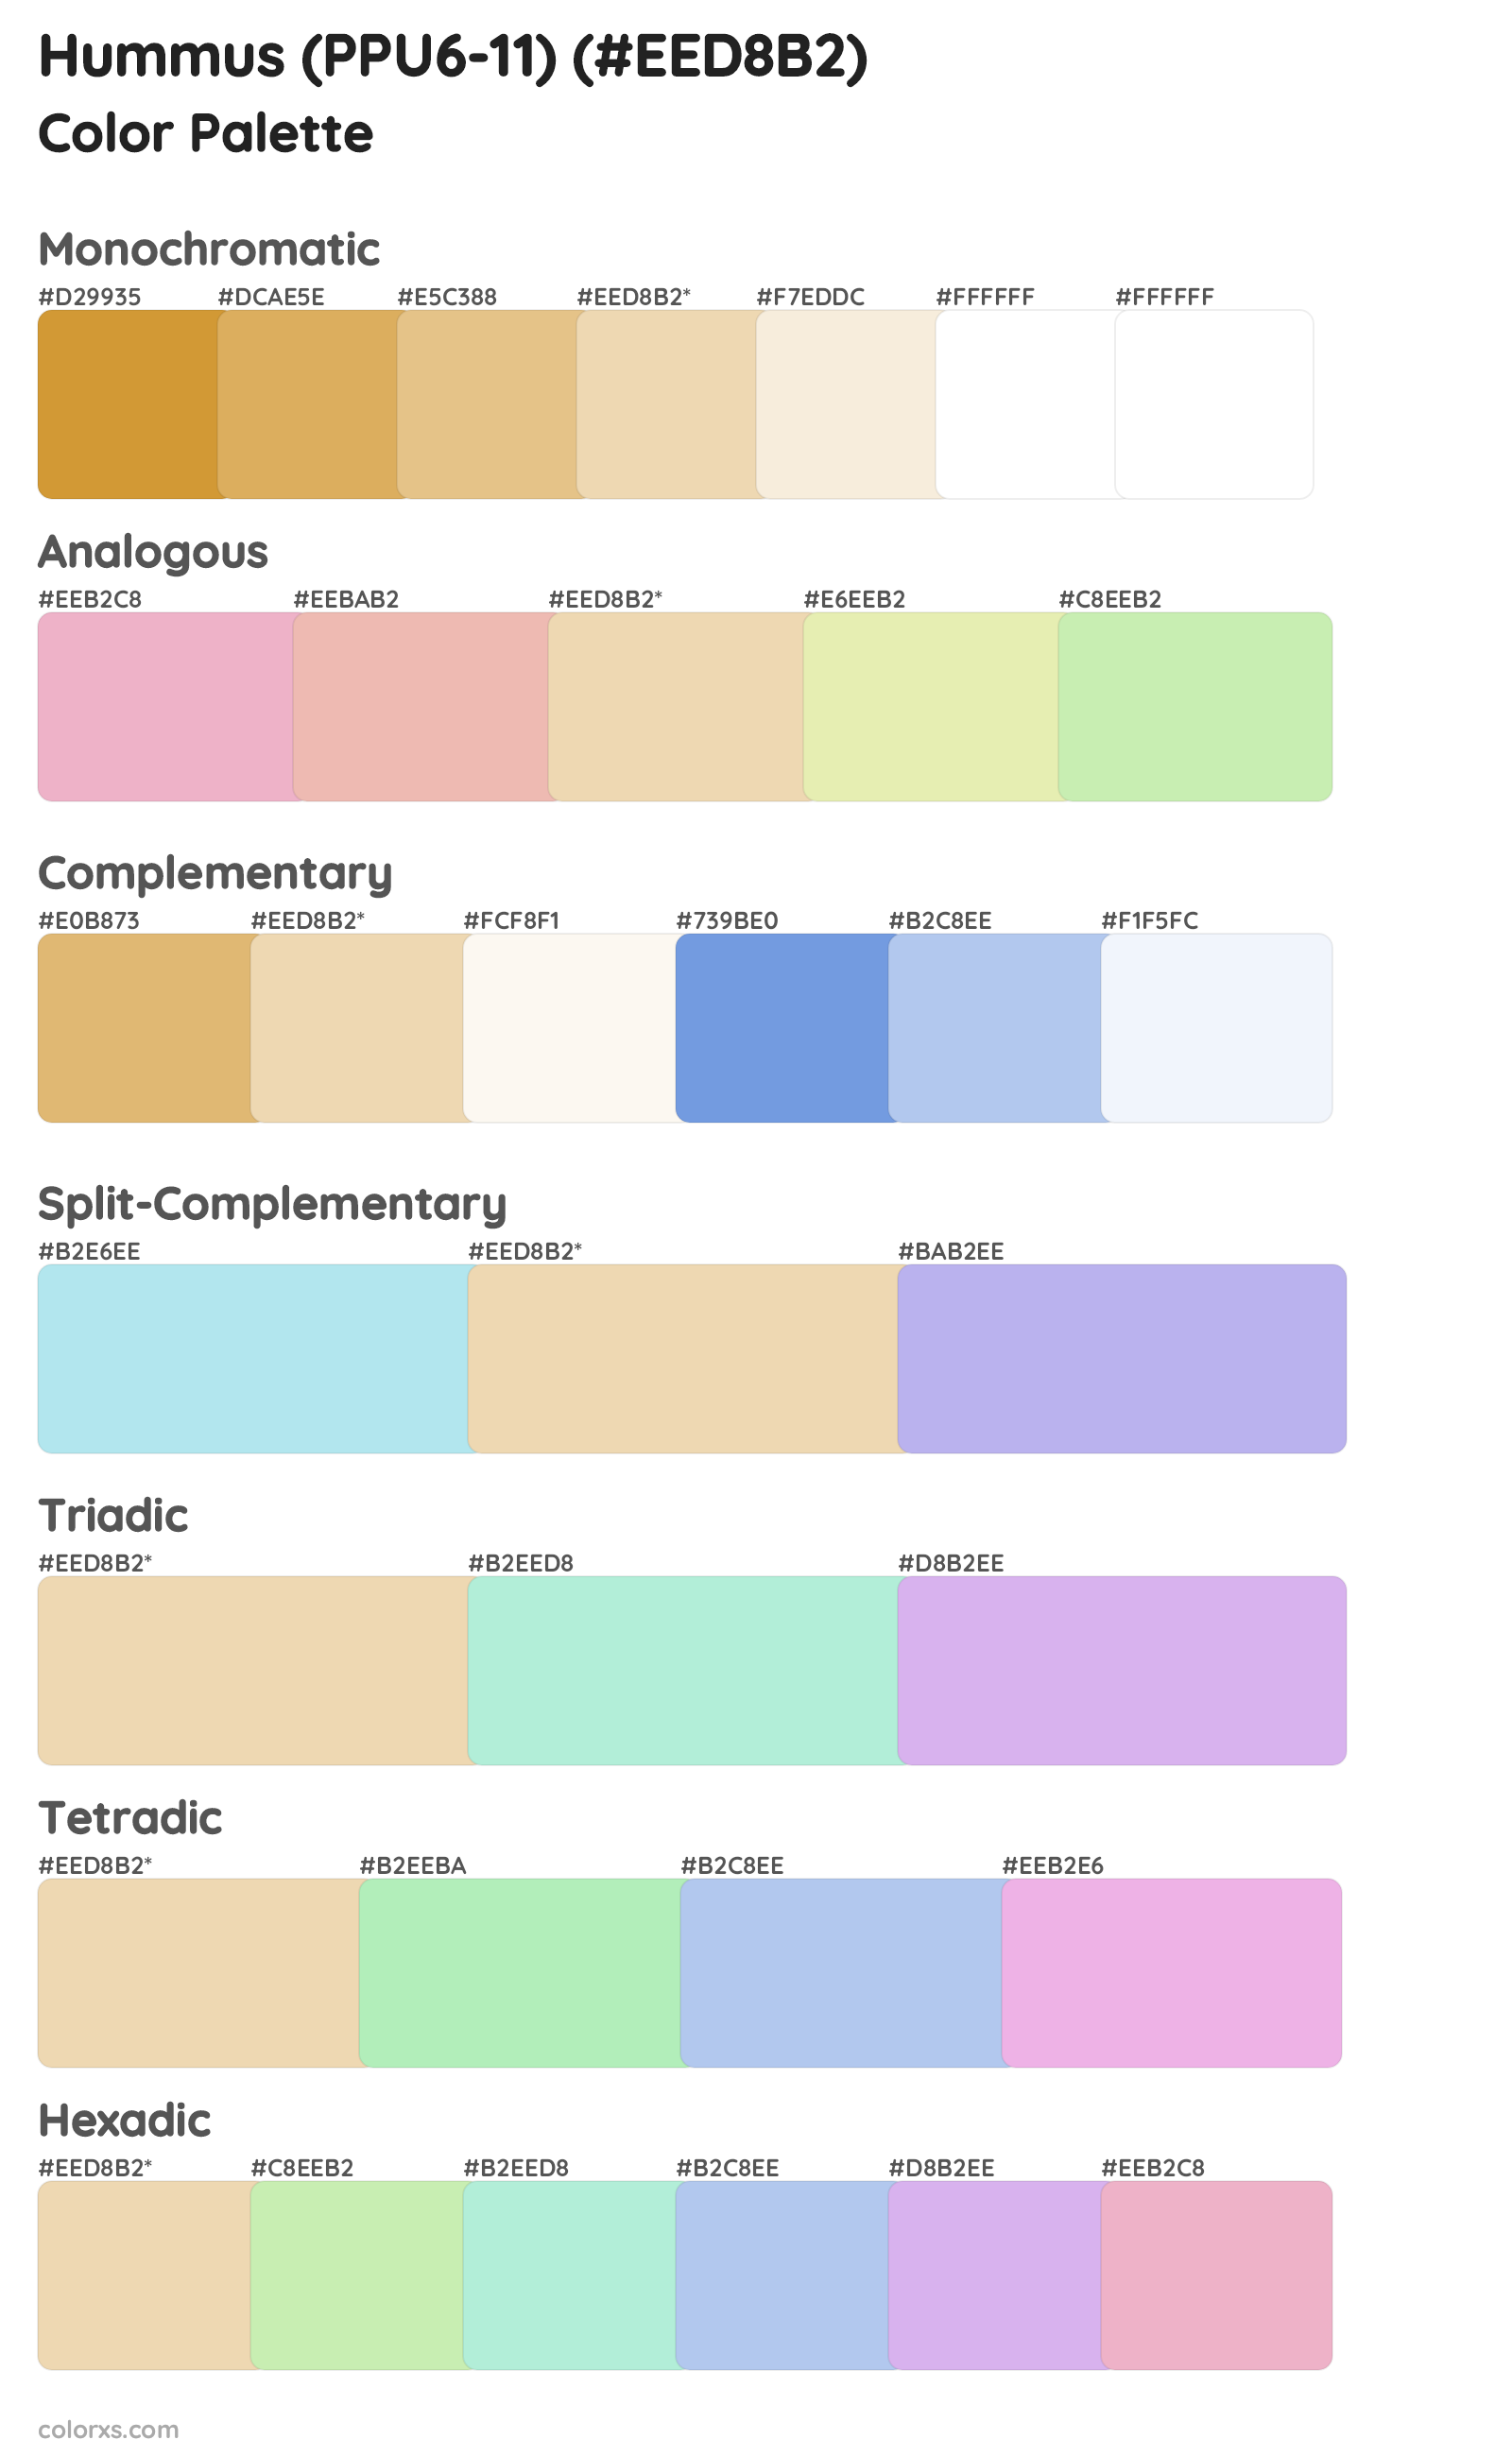 Hummus (PPU6-11) Color Scheme Palettes